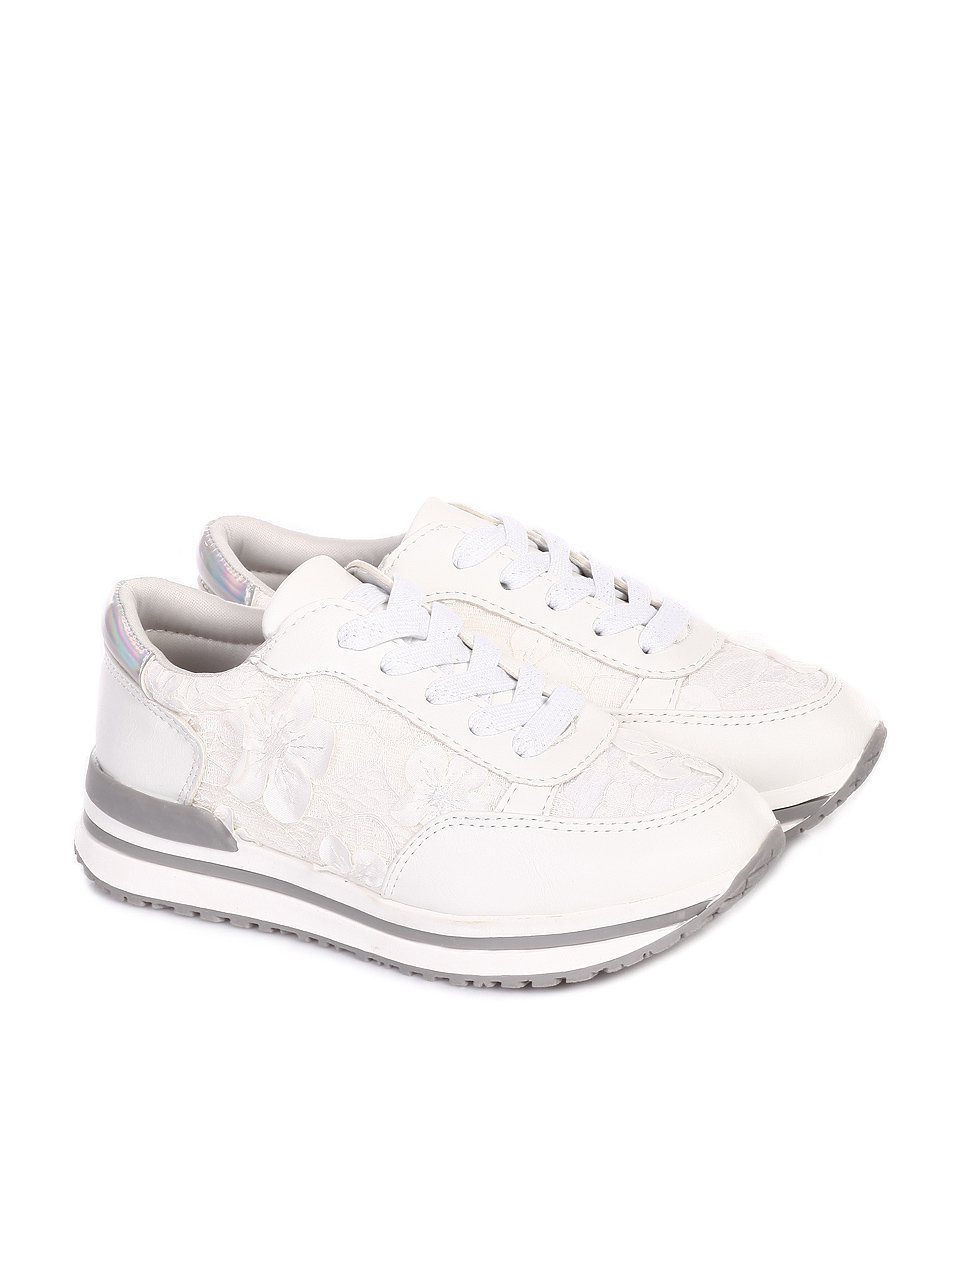 Ежедневни детски обувки в бяло 18P-18075 white